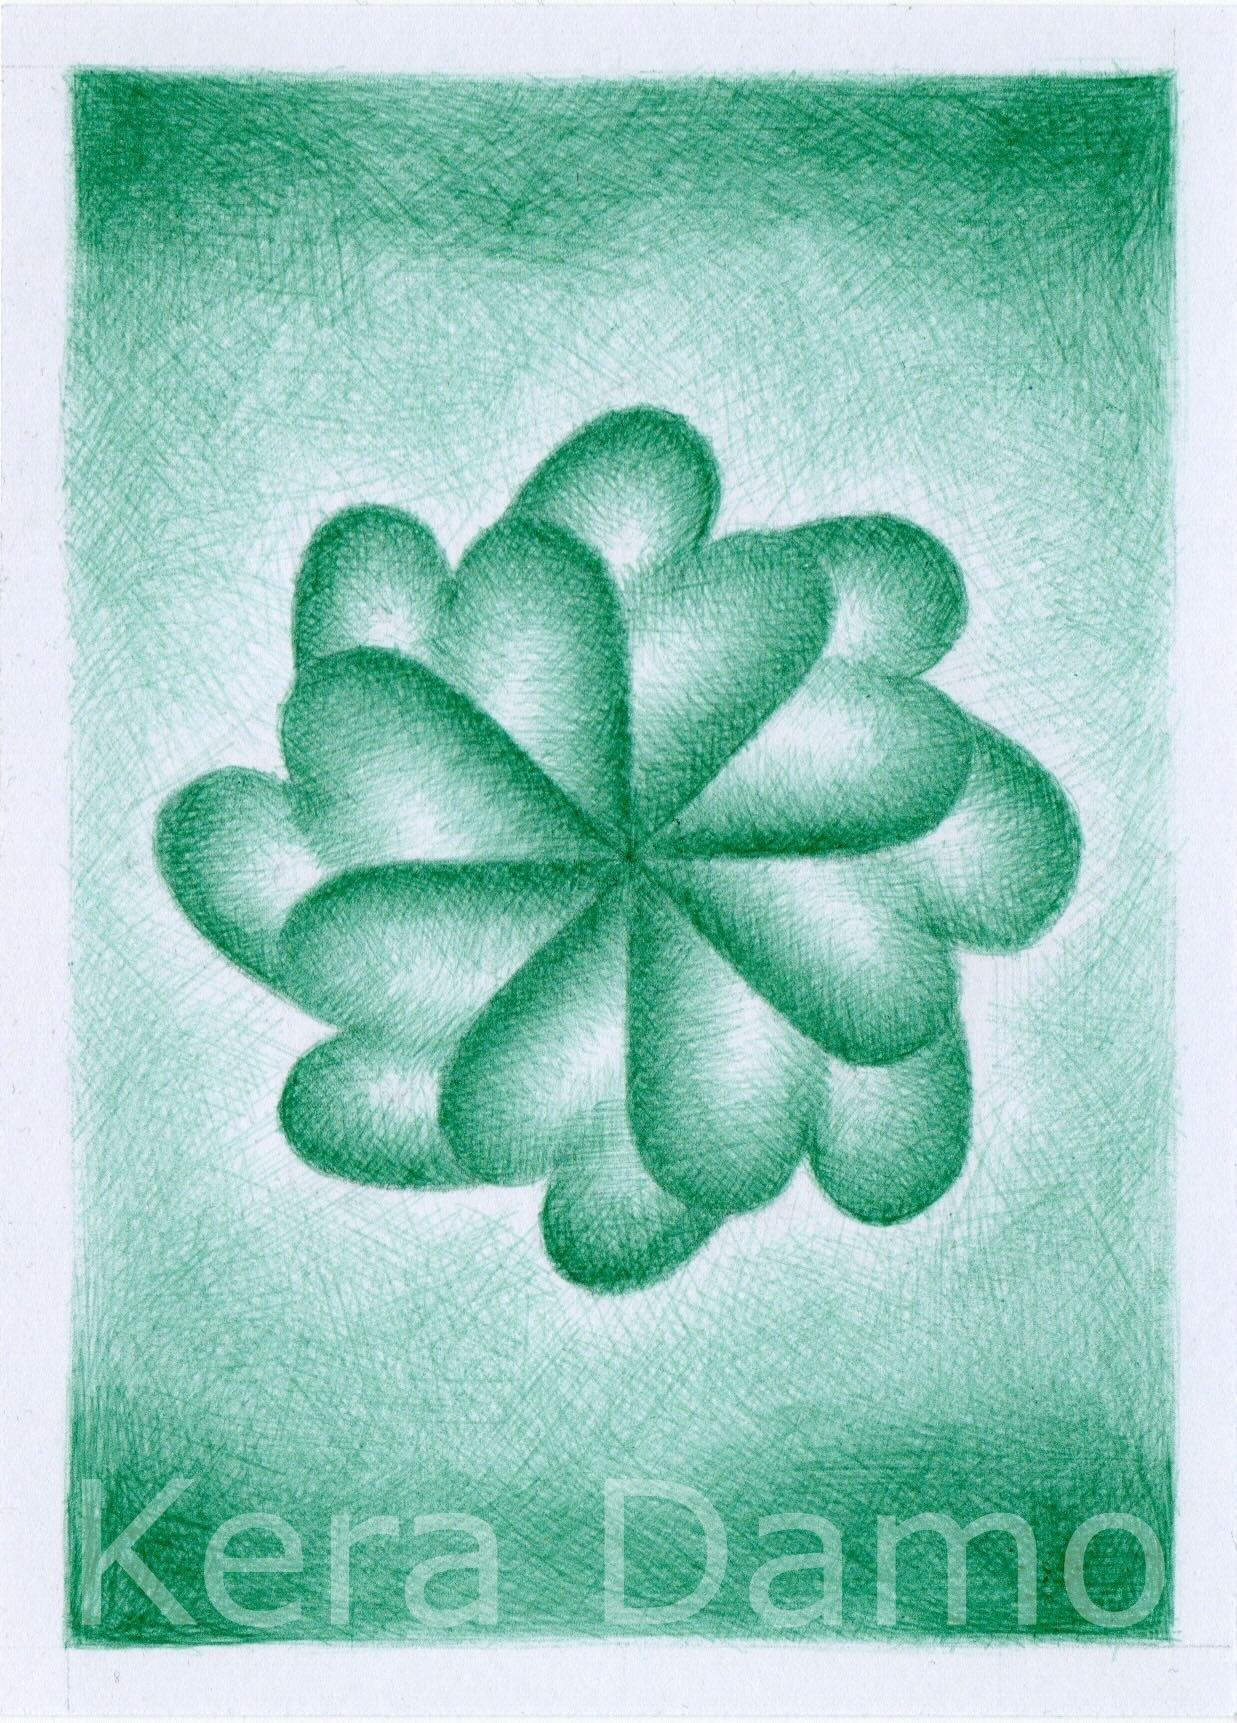 A green pen drawing made by visual artist Kera Damo from the Hague / Een groene pentekening van beeldend kunstenaar Kera Damo uit Den Haag